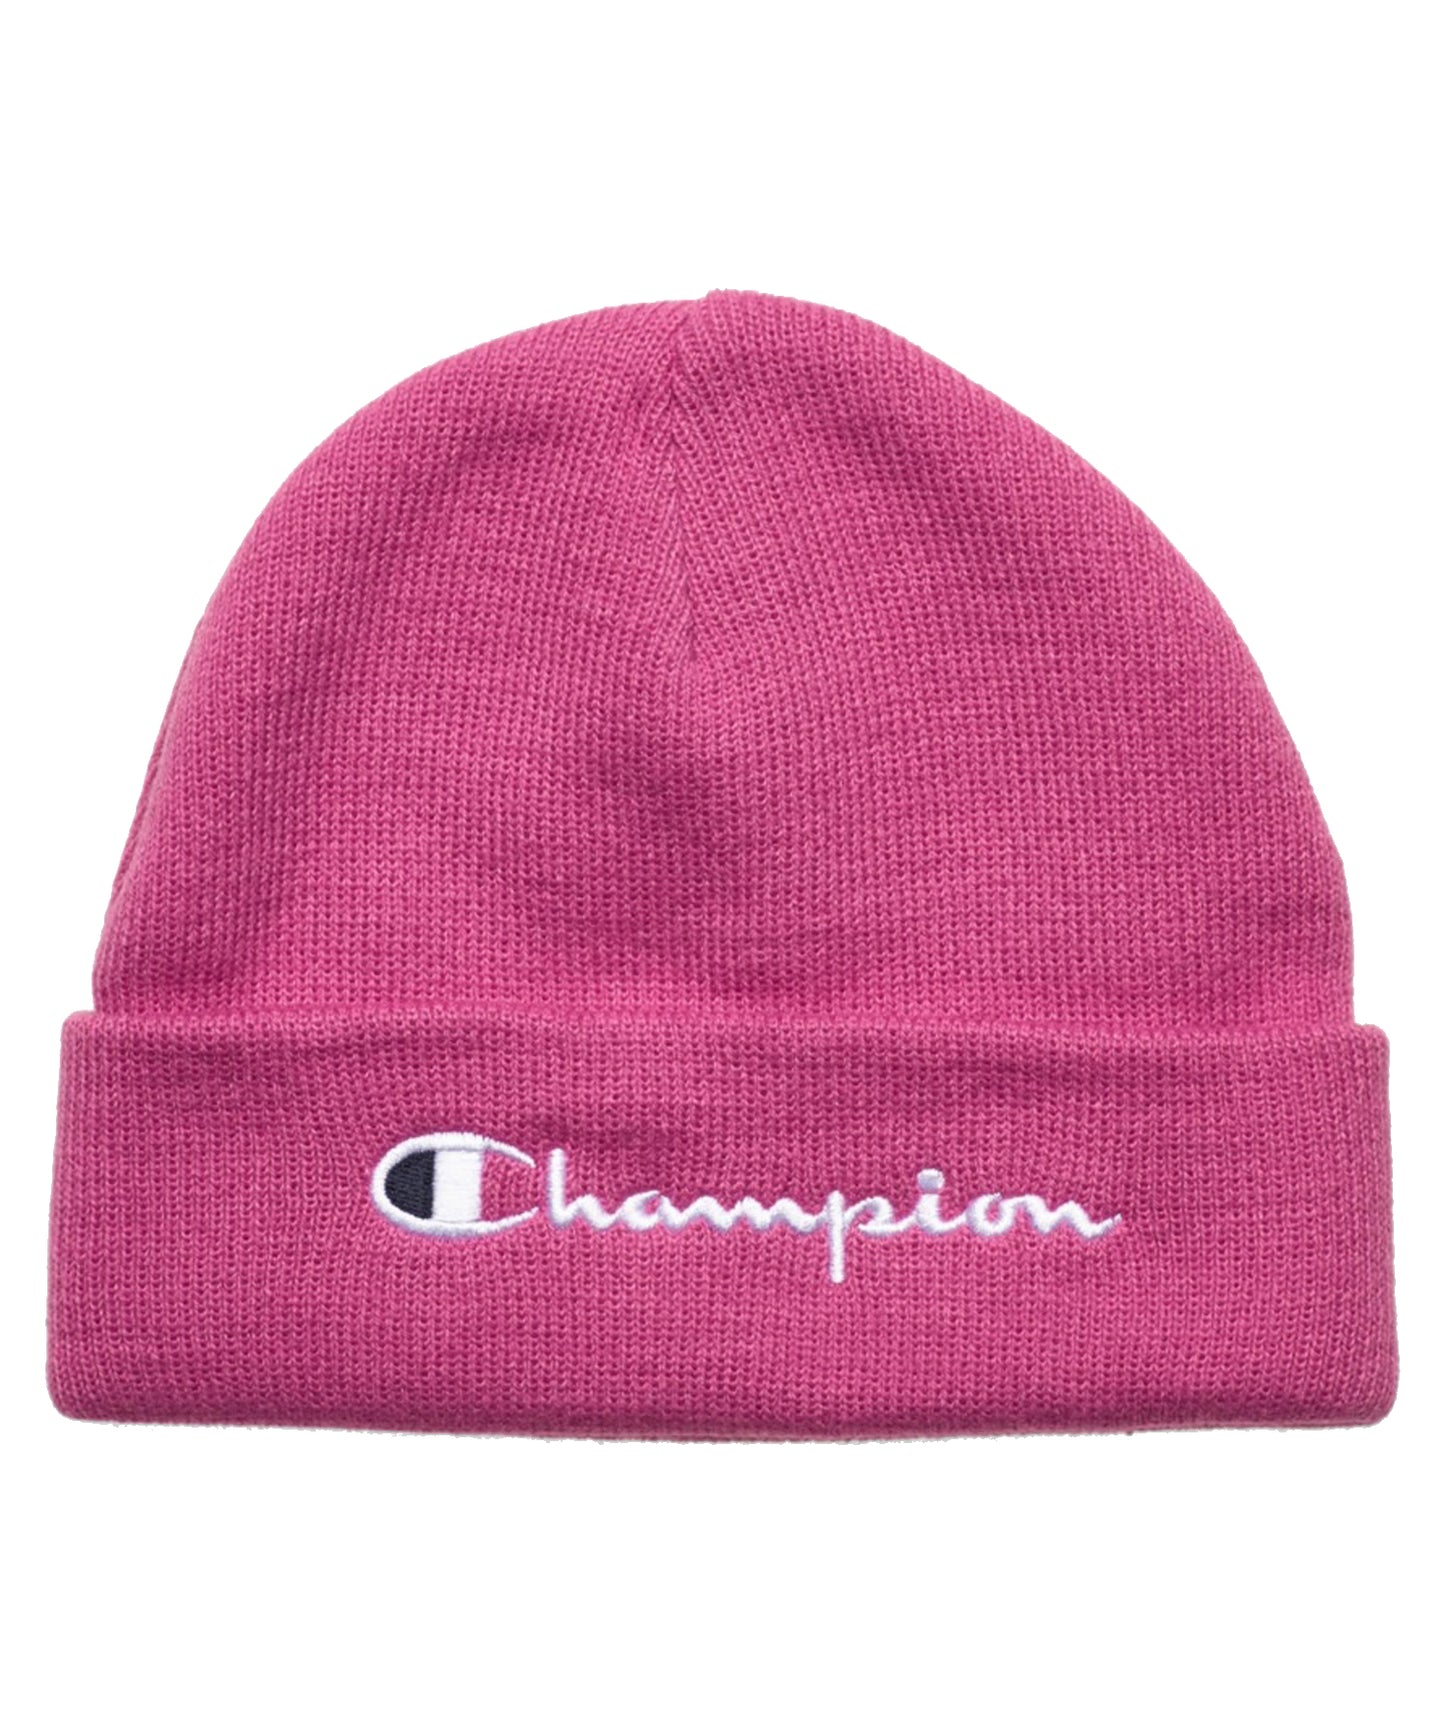 Gorro Champion tipo beanie de color rosa y logo bordado.